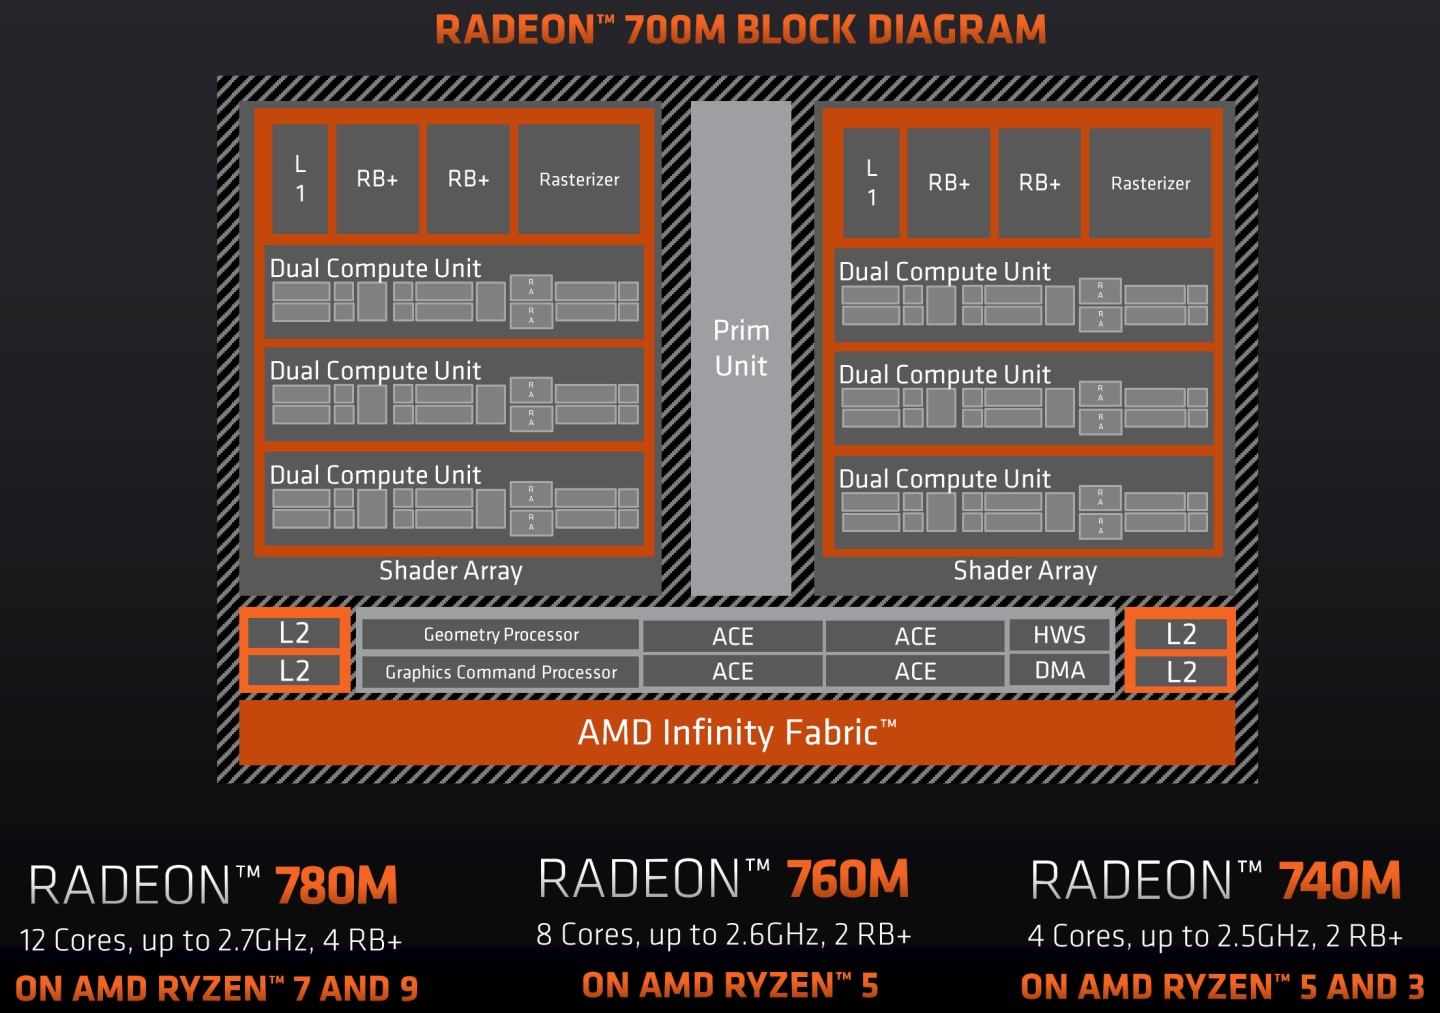 最高階的Radeon 780M內建顯示晶片具有12組運算單元，最高時脈可達2.7GHz。